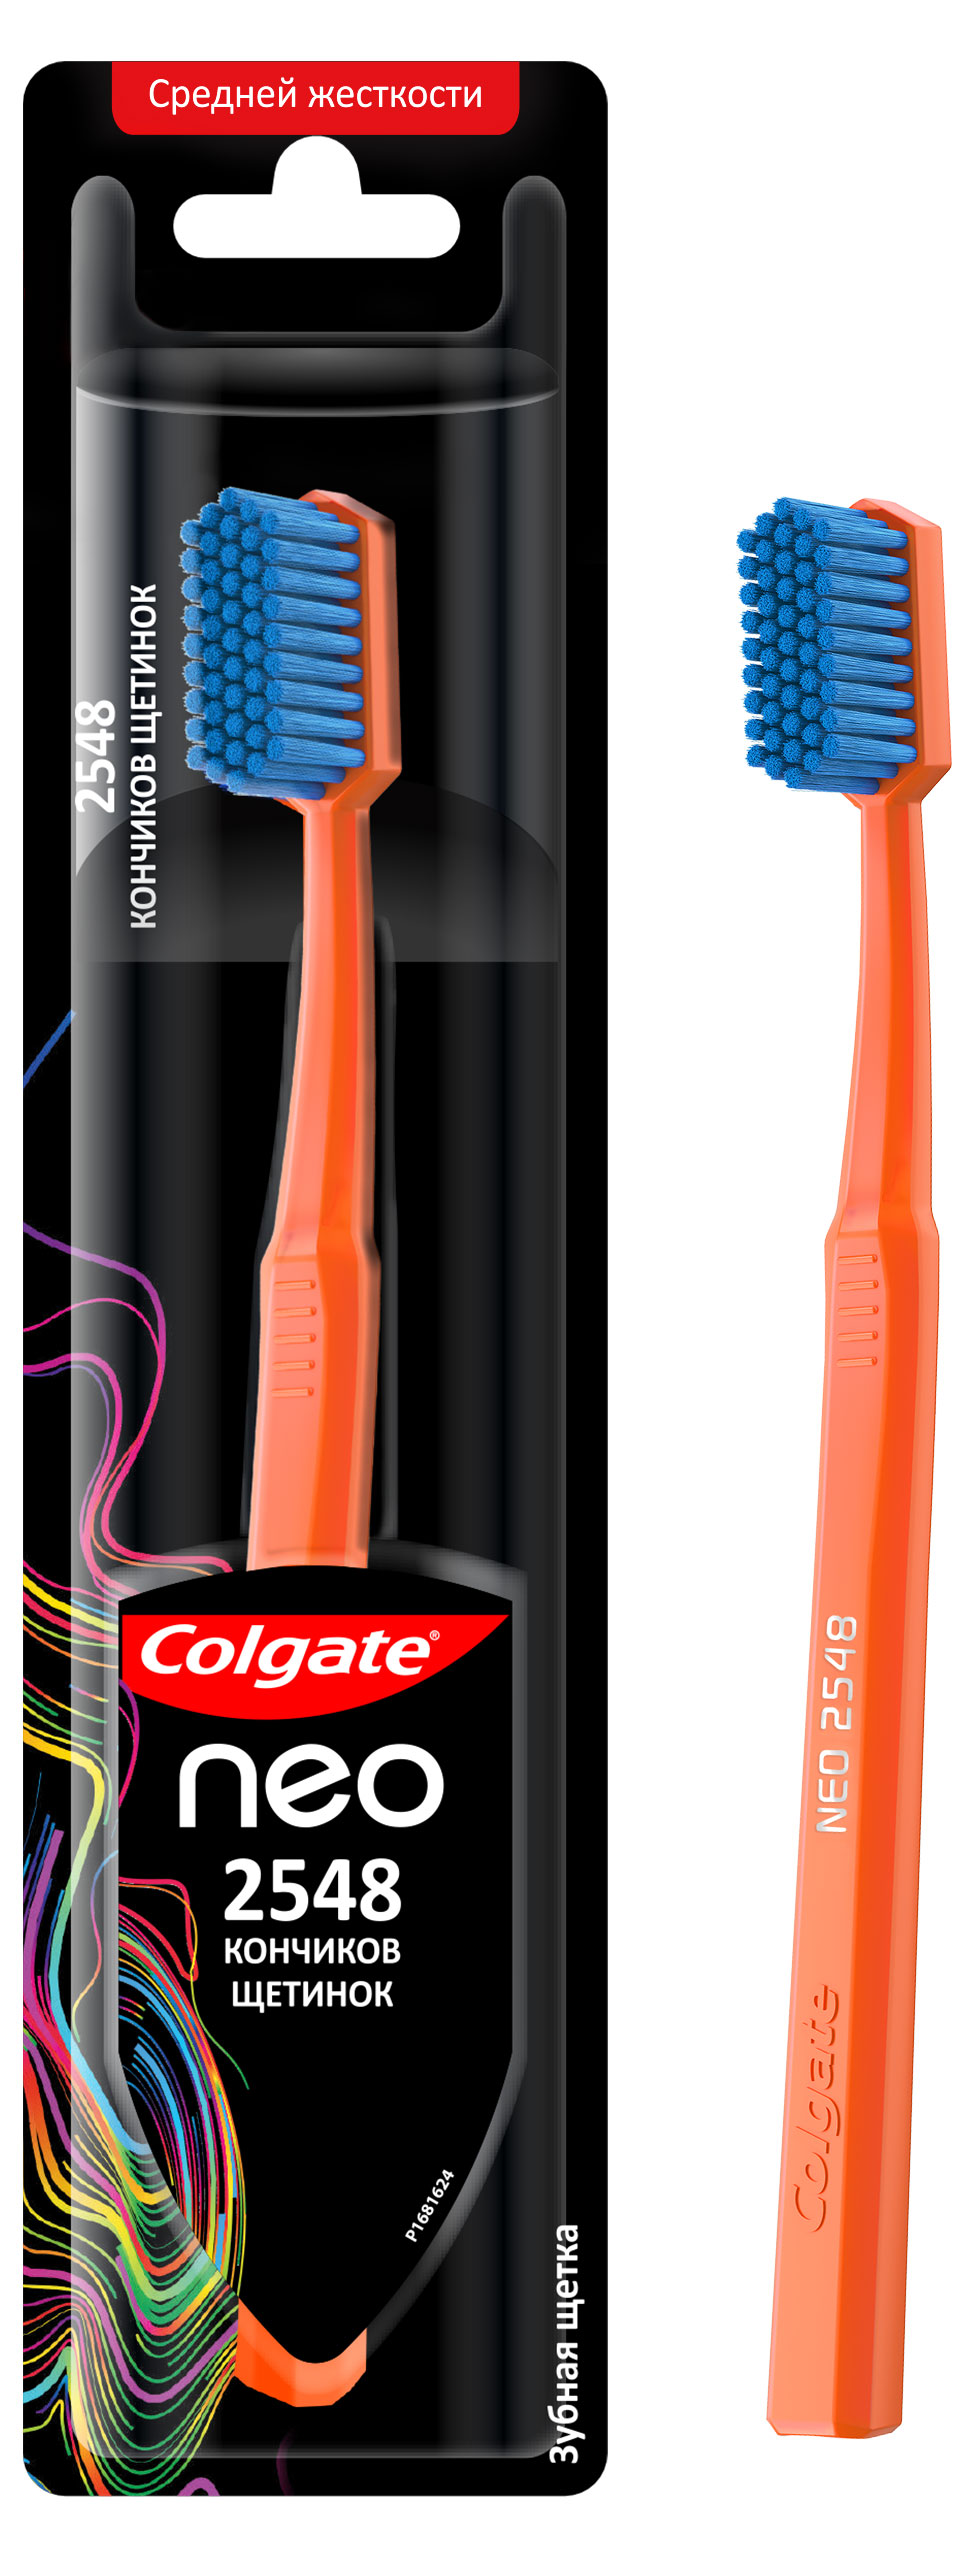 Зубная щетка Colgate Neo 2548 кончиков щетинок, средней жесткости